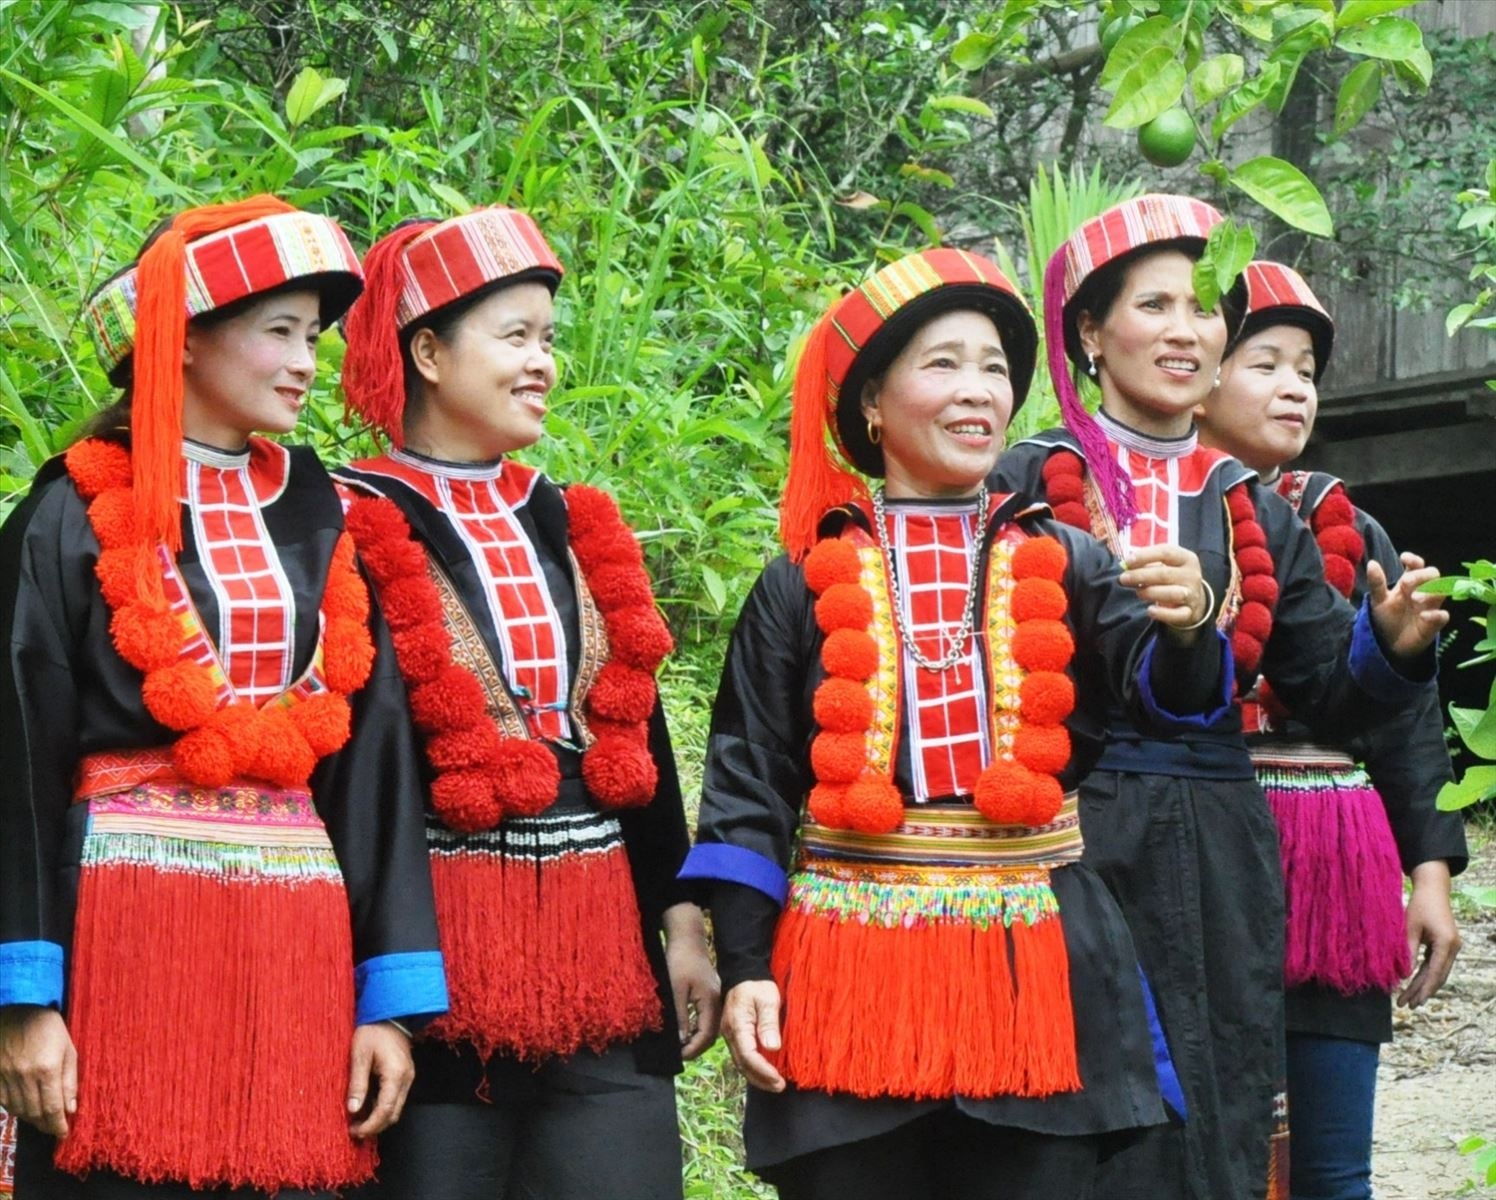 Ca khúc "Núi rừng vang tiếng Páo Dung" đã đánh dấu tên tuổi của nhạc sĩ Vương Vình